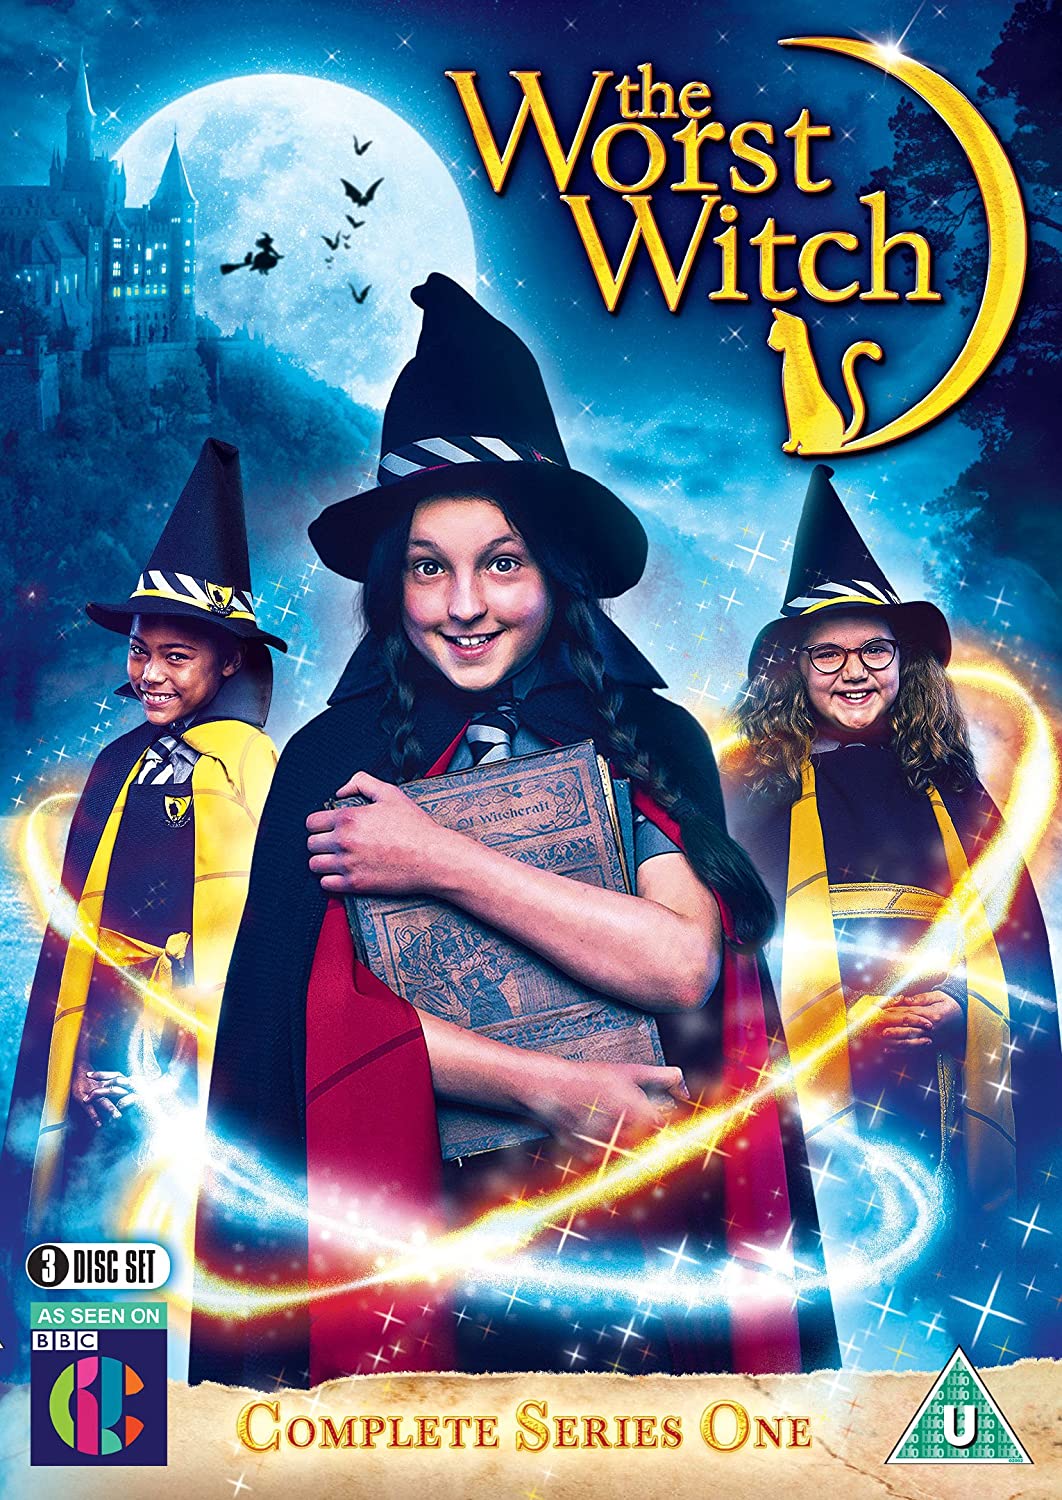 ดูหนังออนไลน์ฟรี The Worst Witch Season 3 (2019) โอมเพี้ยง! แม่มดน้อยสู้ตาย ซีซั่น 3 ตอนที่ 5